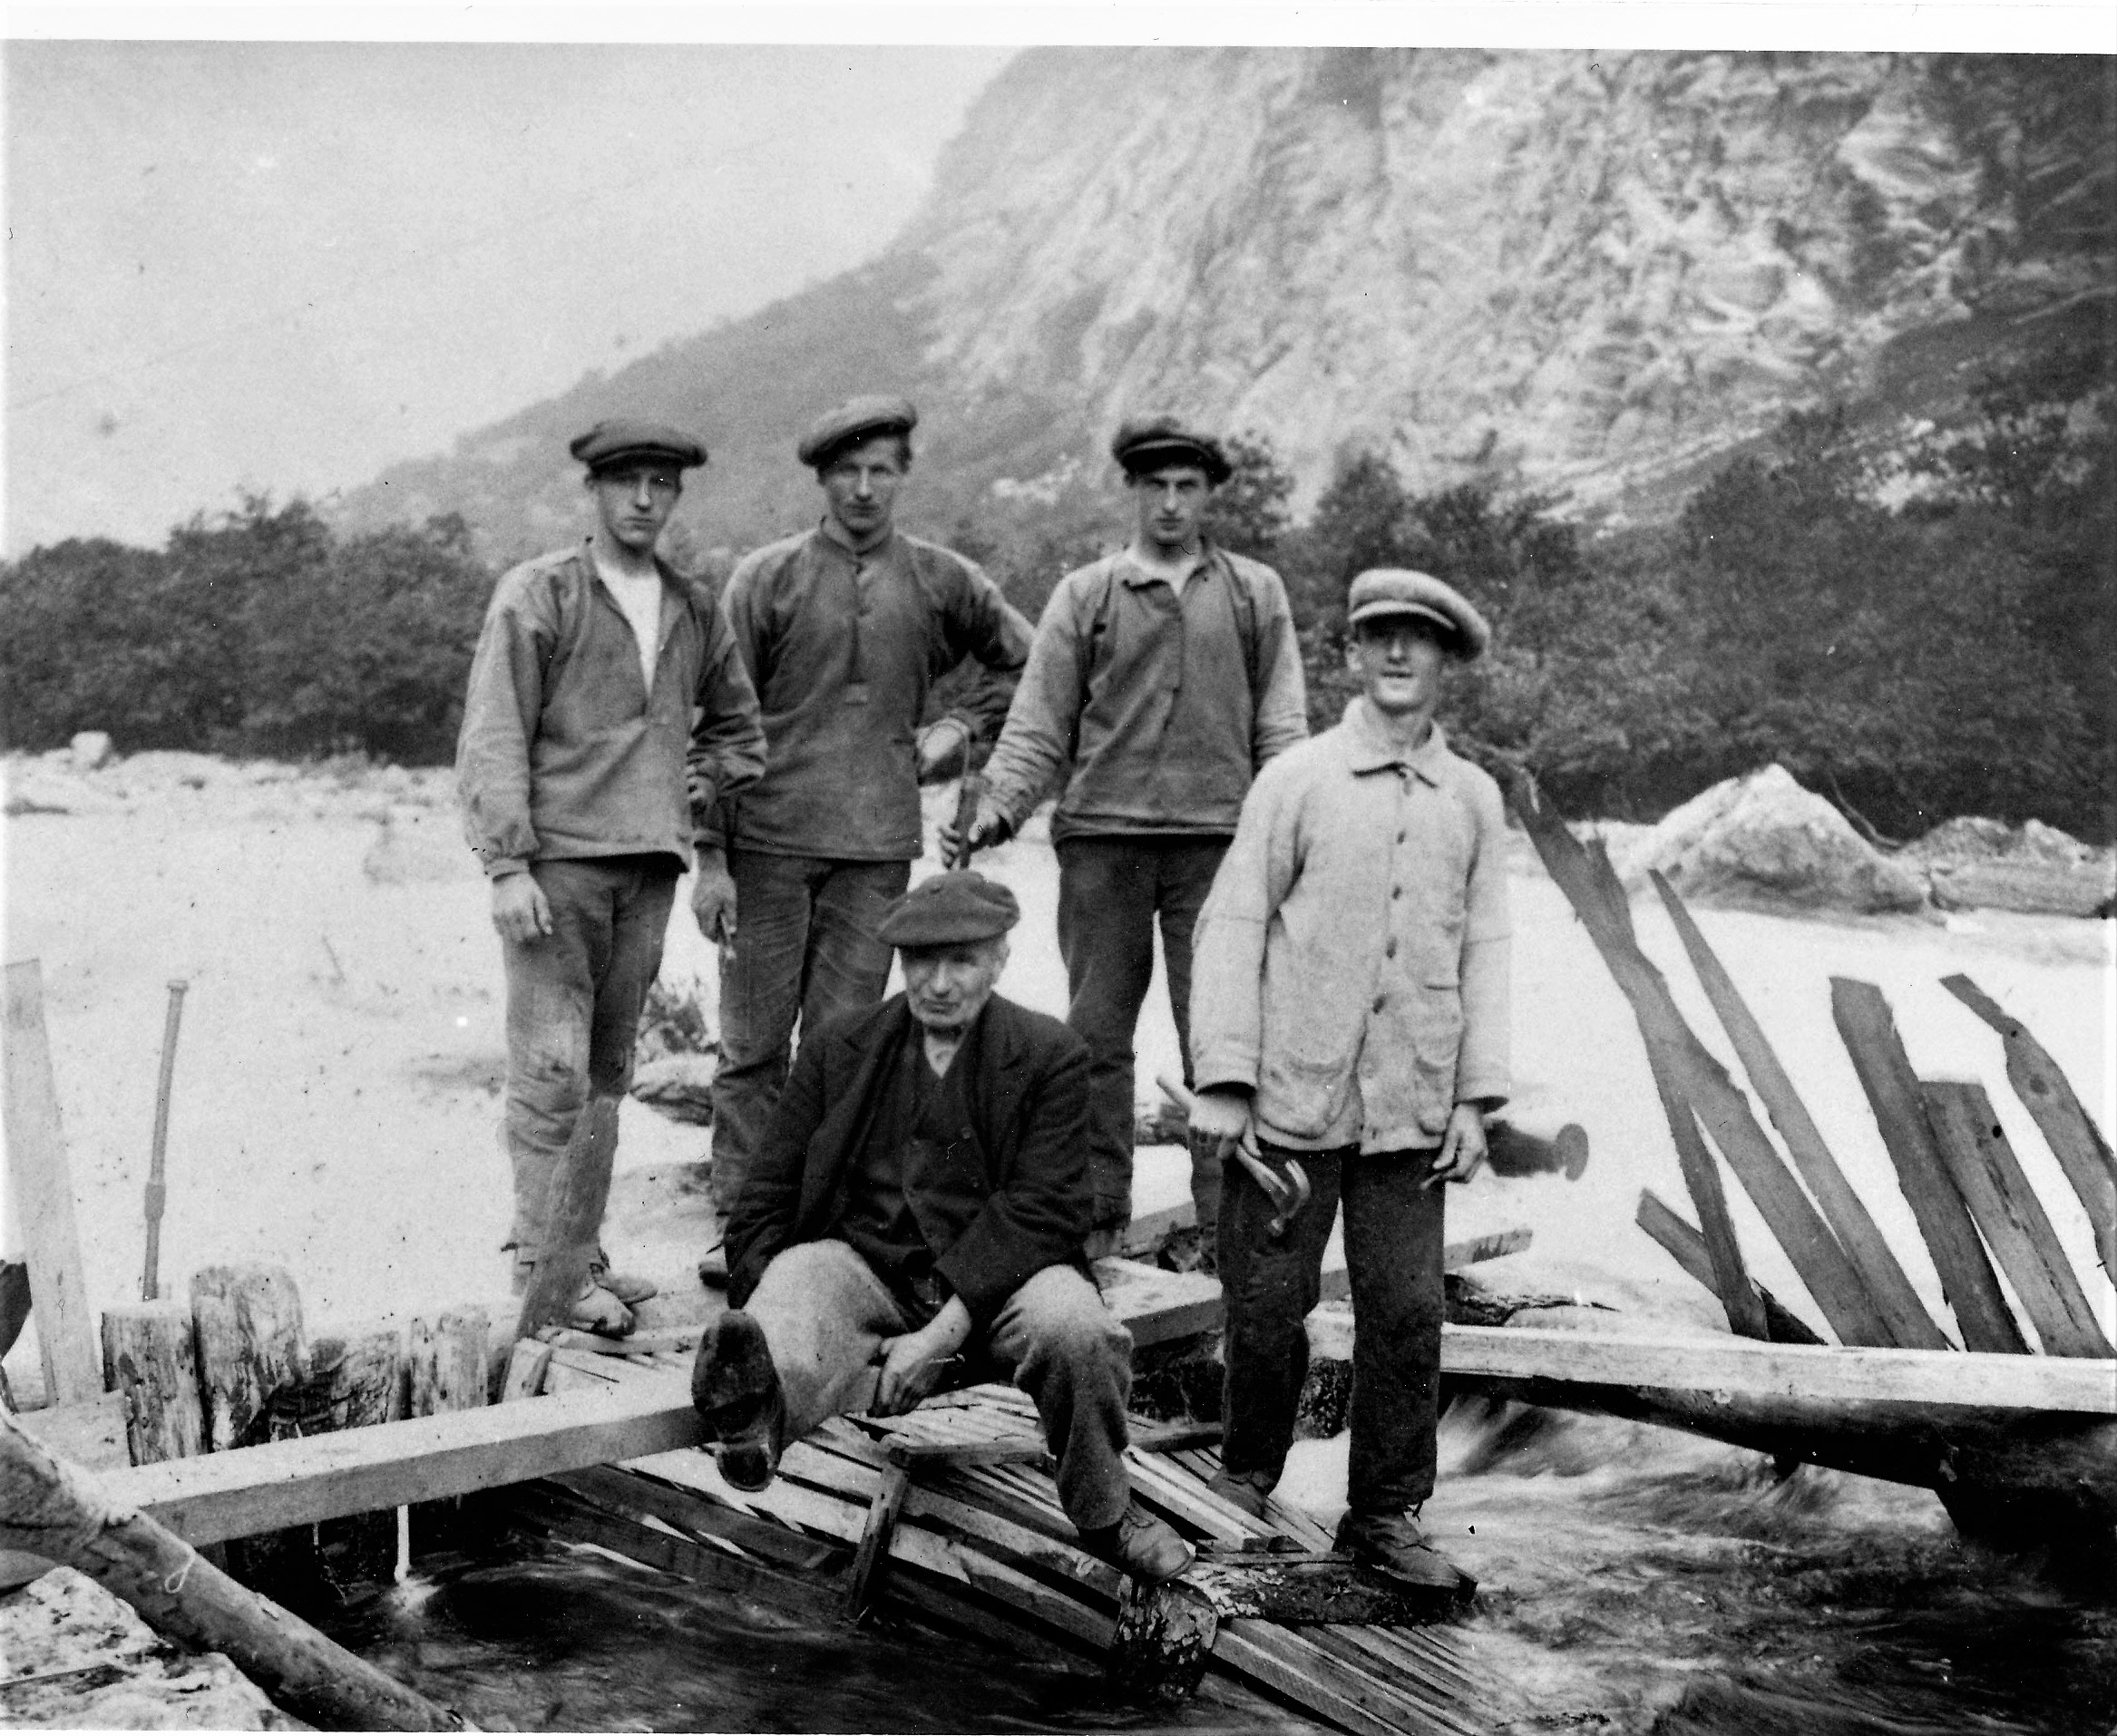 Nerteina ca 1915: Andreas Arntsen, Jørgen Lyngheim, Jørgen Nilsen Lyngheim.